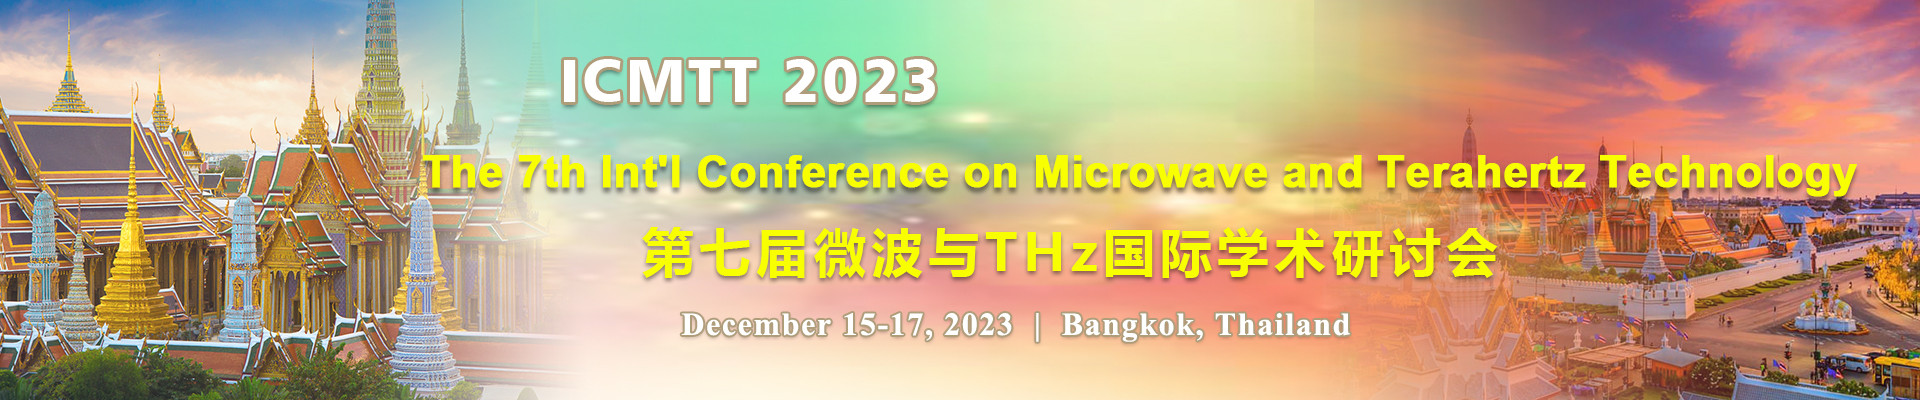 第七届微波与THz国际学术研讨会(ICMTT 2023)